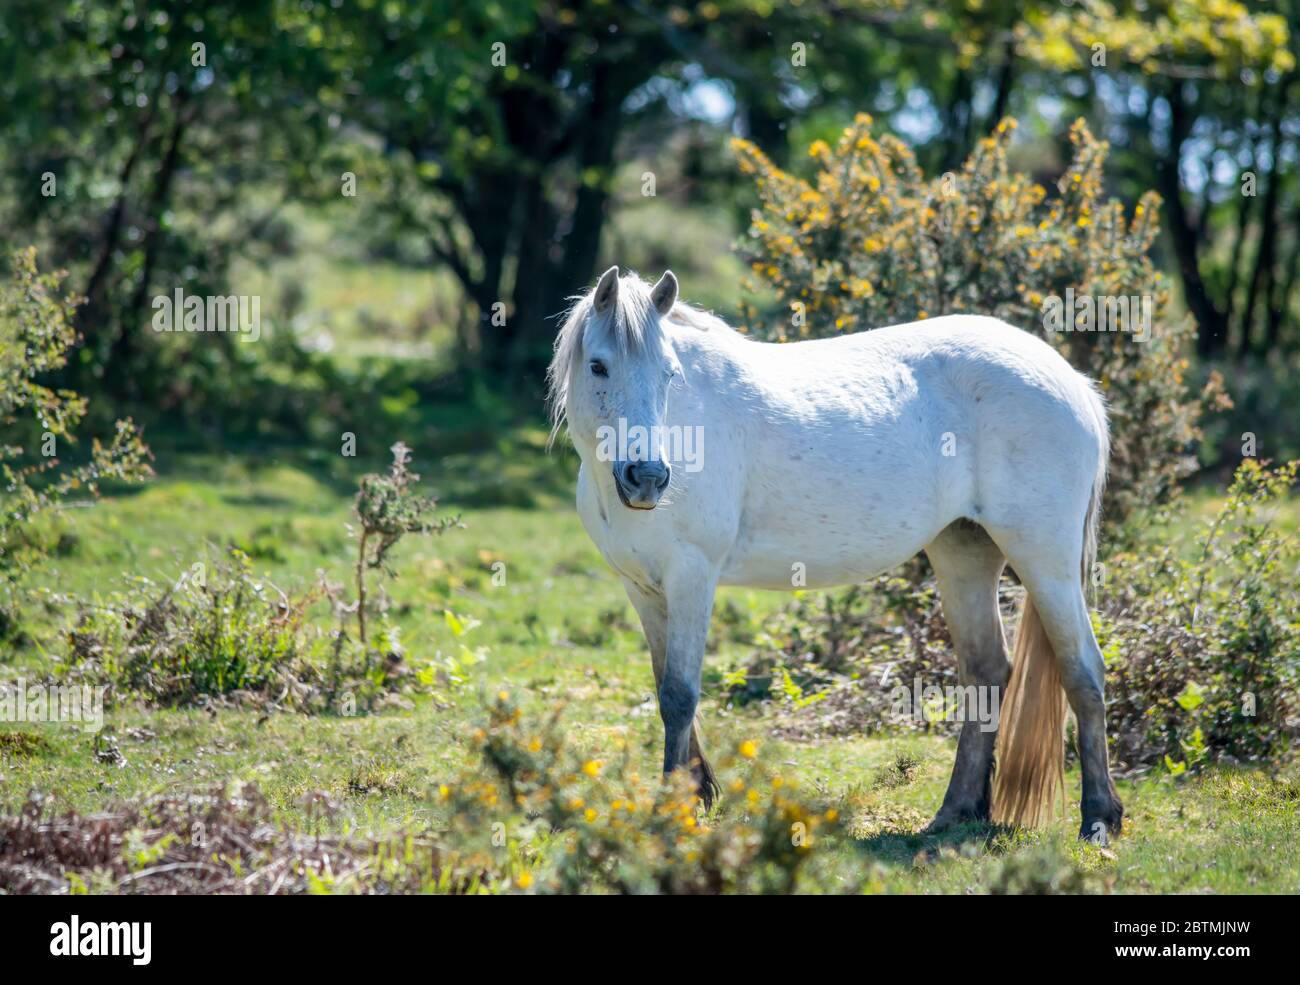 Schönes weißes New Forest Pony in der Nähe von Büschen stehen und wegschauen an sonnigen Tag, verschwommener Hintergrund kopieren Raum nach links Stockfoto